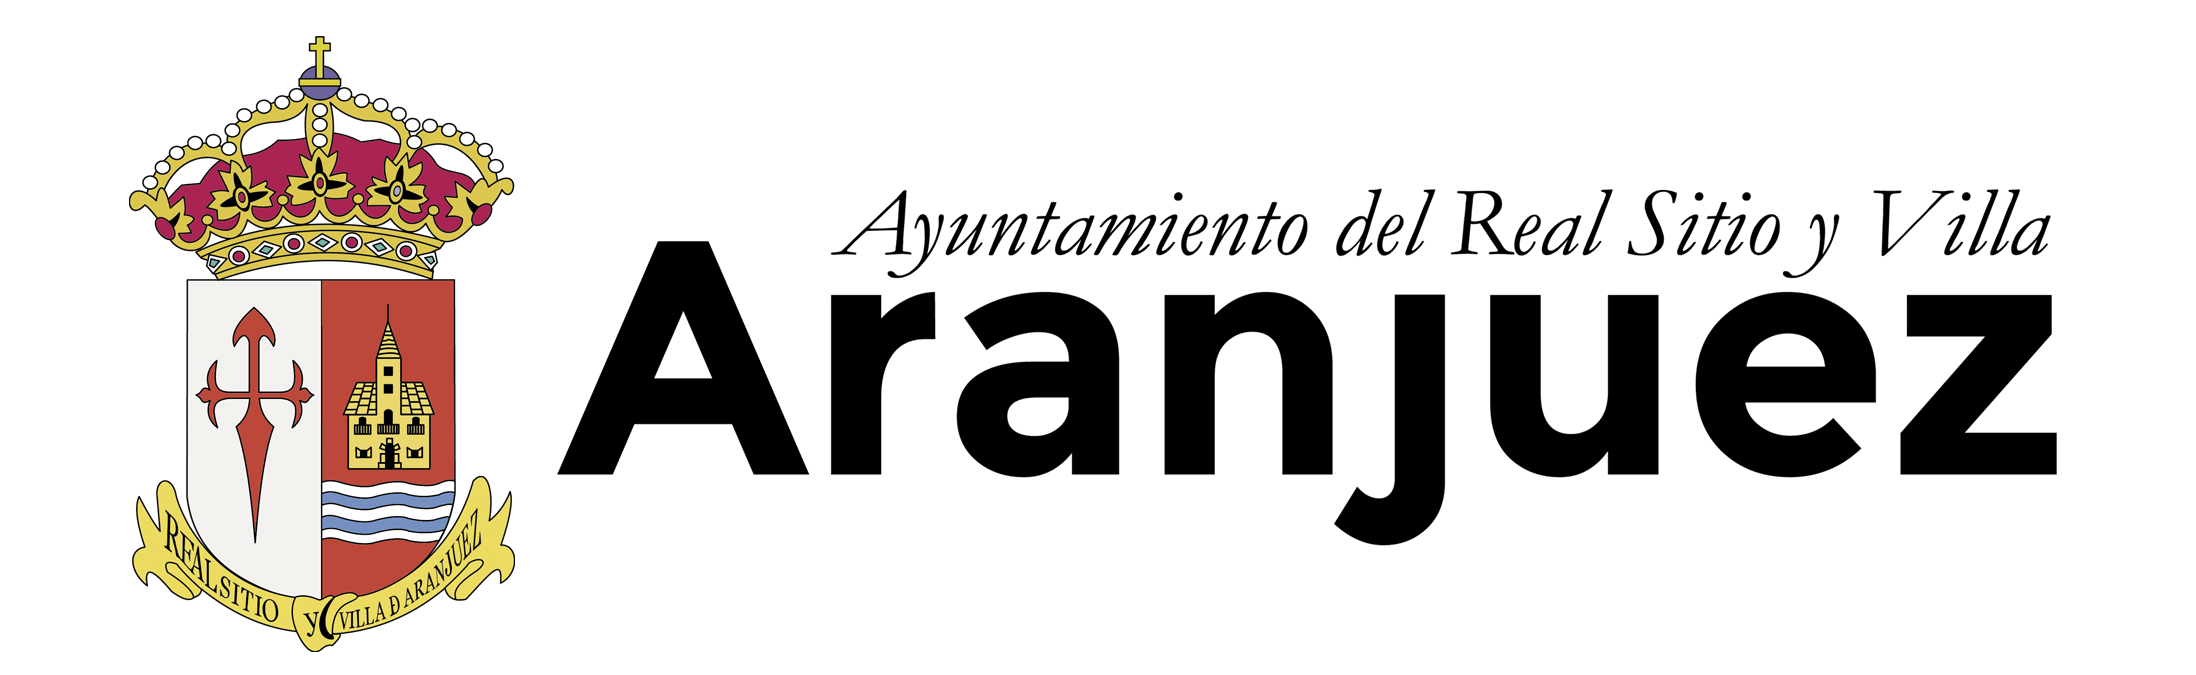 Ayuntamiento del Real Sitio y Villa de Aranjuez